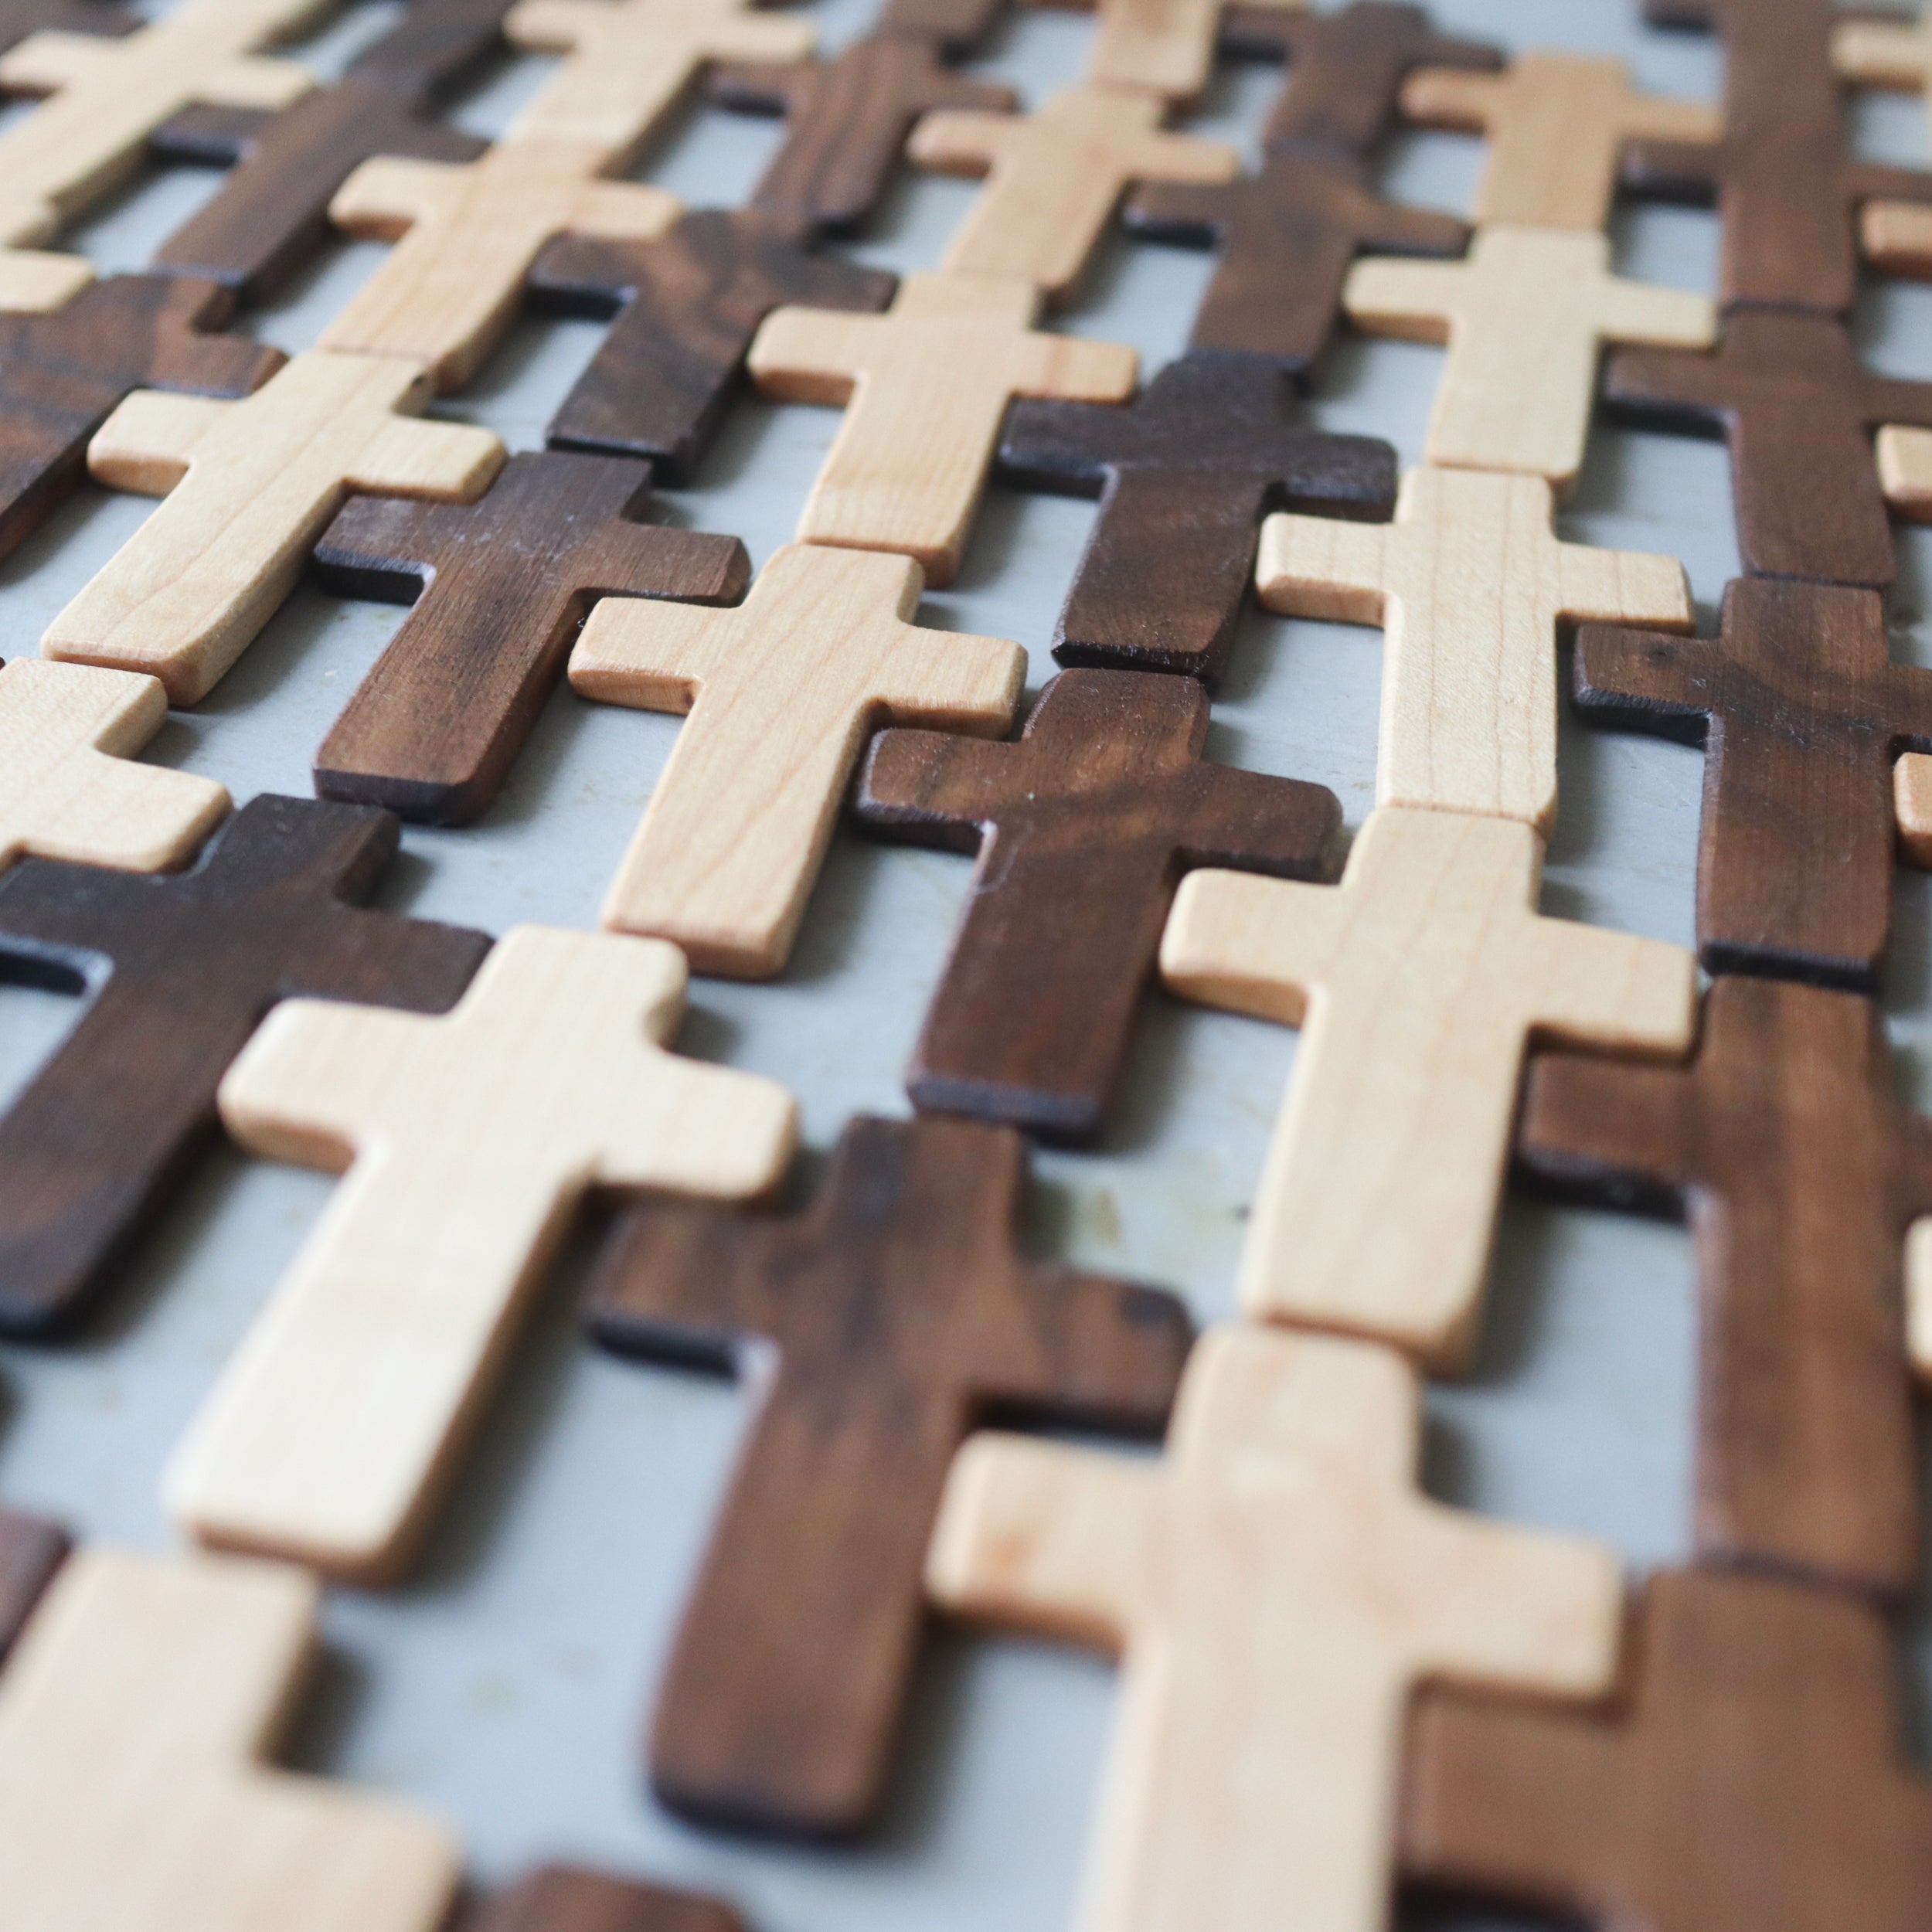 Handmade Wooden Pocket Crosses – Dennehey Design Co.